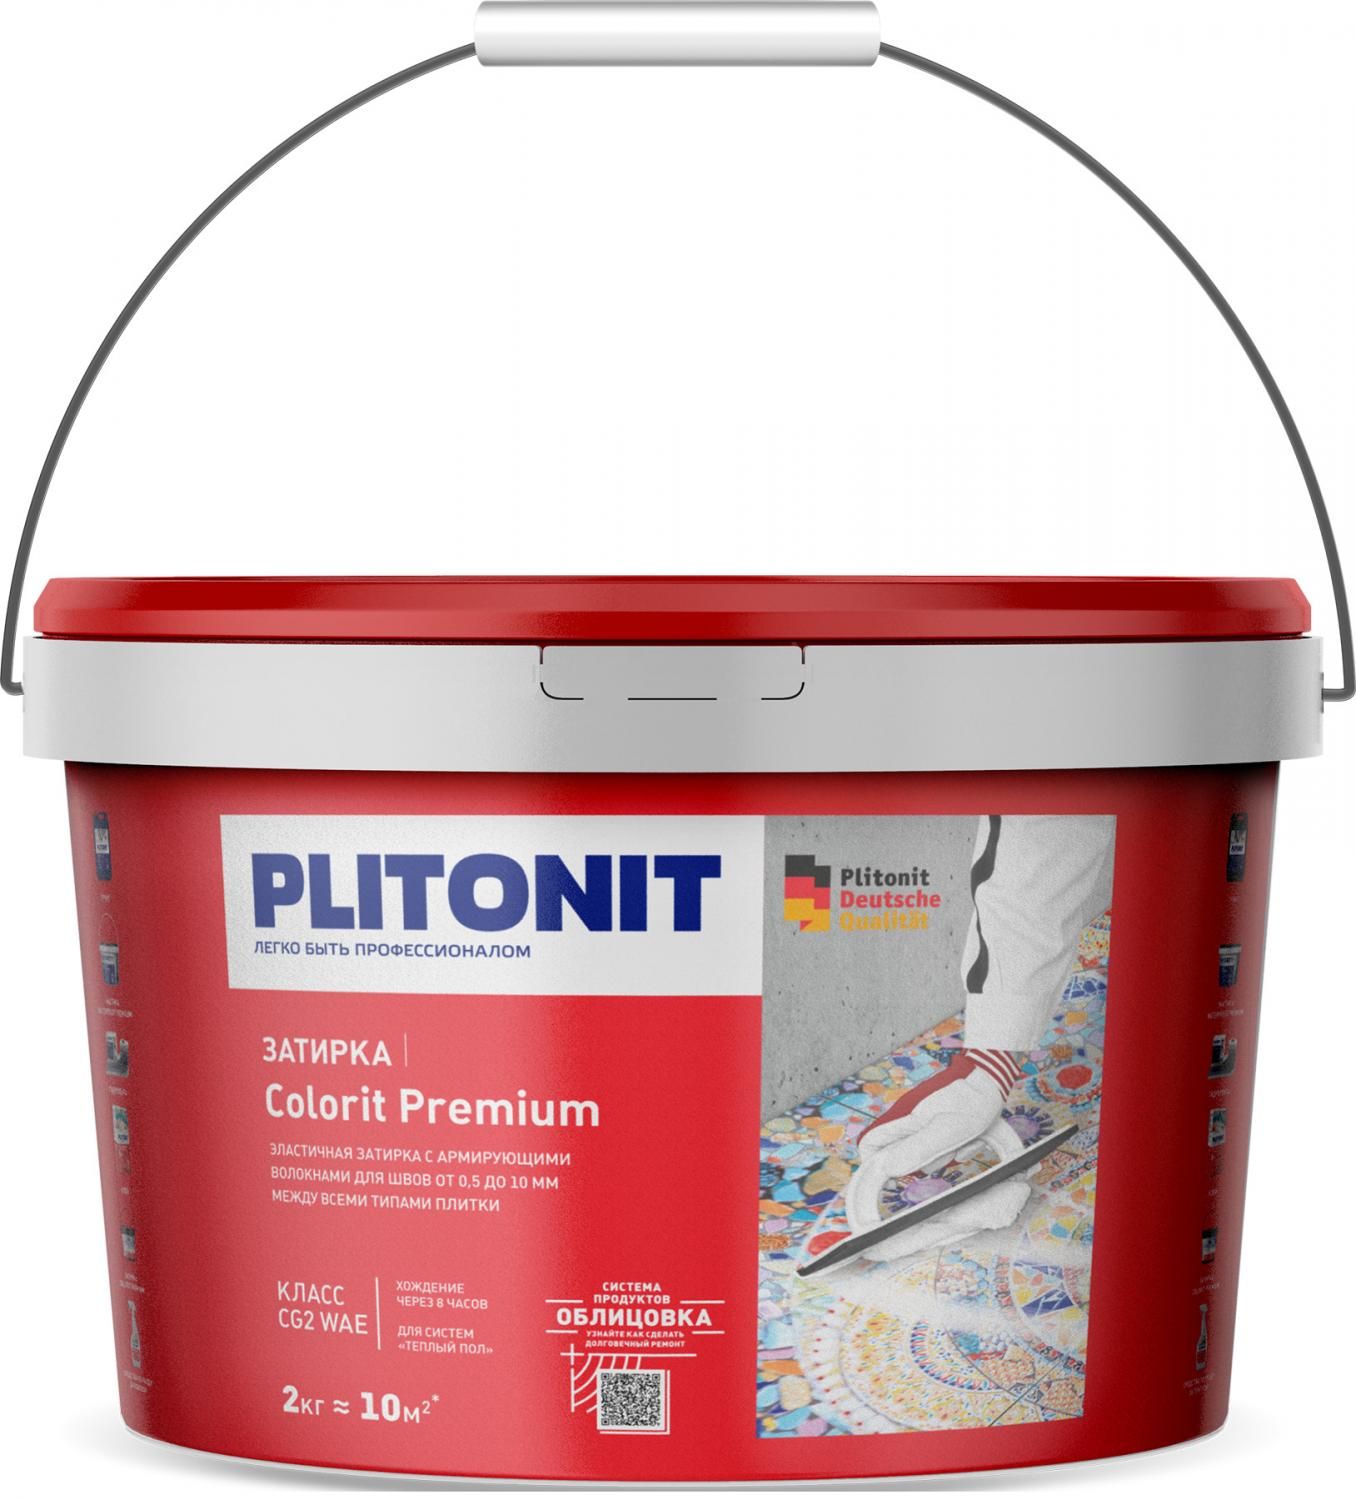 Купить Затирка Plitonit Colorit Premium какао 2 кг цементная